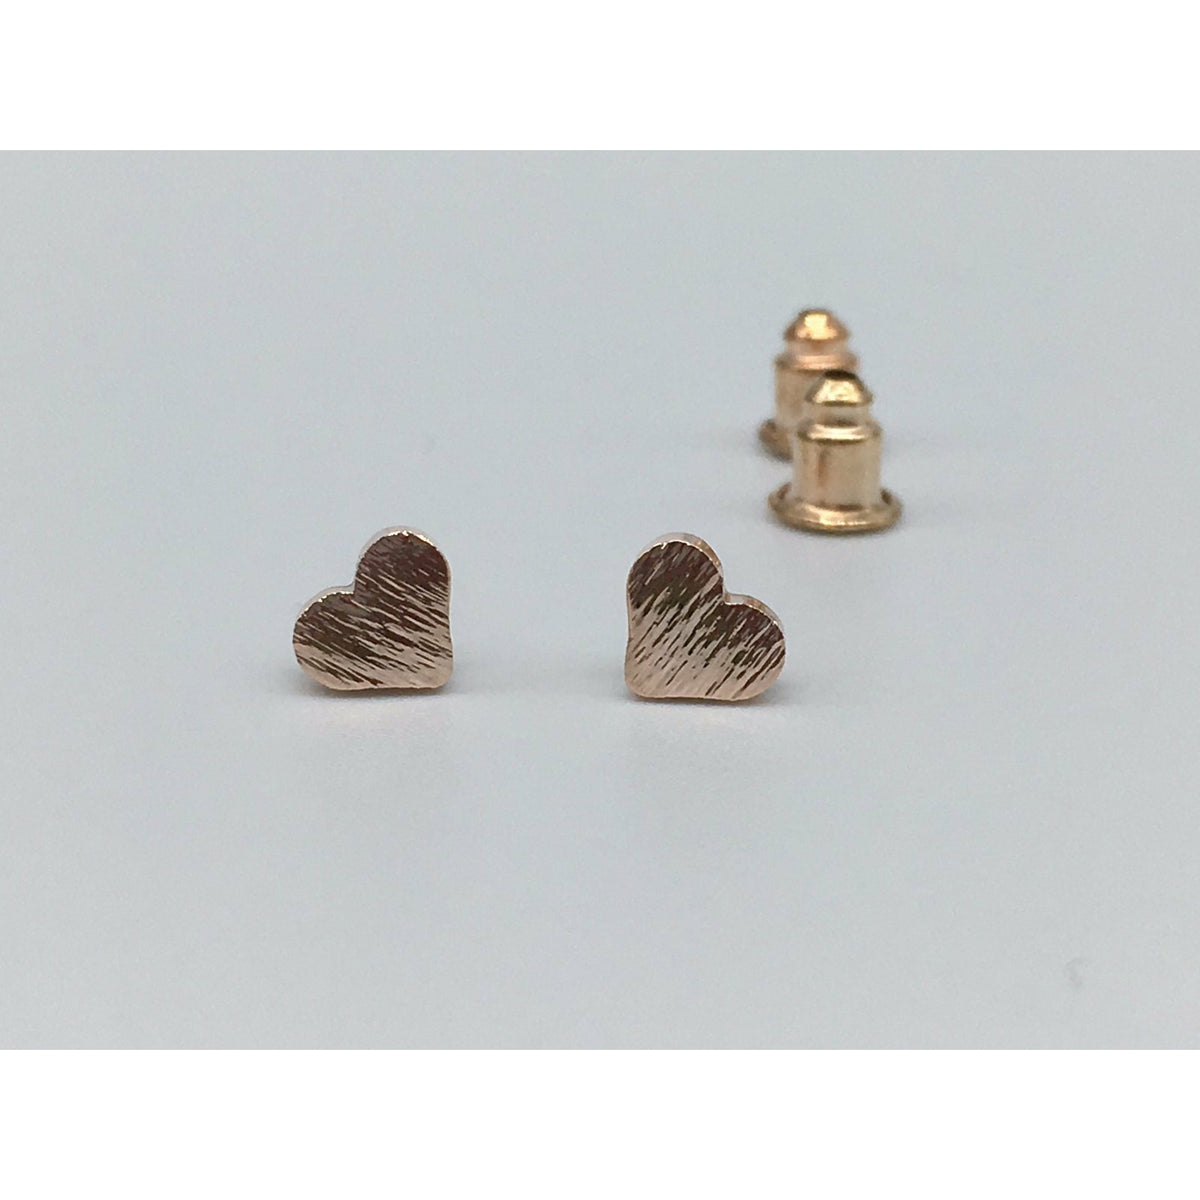 Tween to Teen Earrings Rose Gold Brushed Metal Tiny Heart Stud Earrings 0720252999913 tween and teen